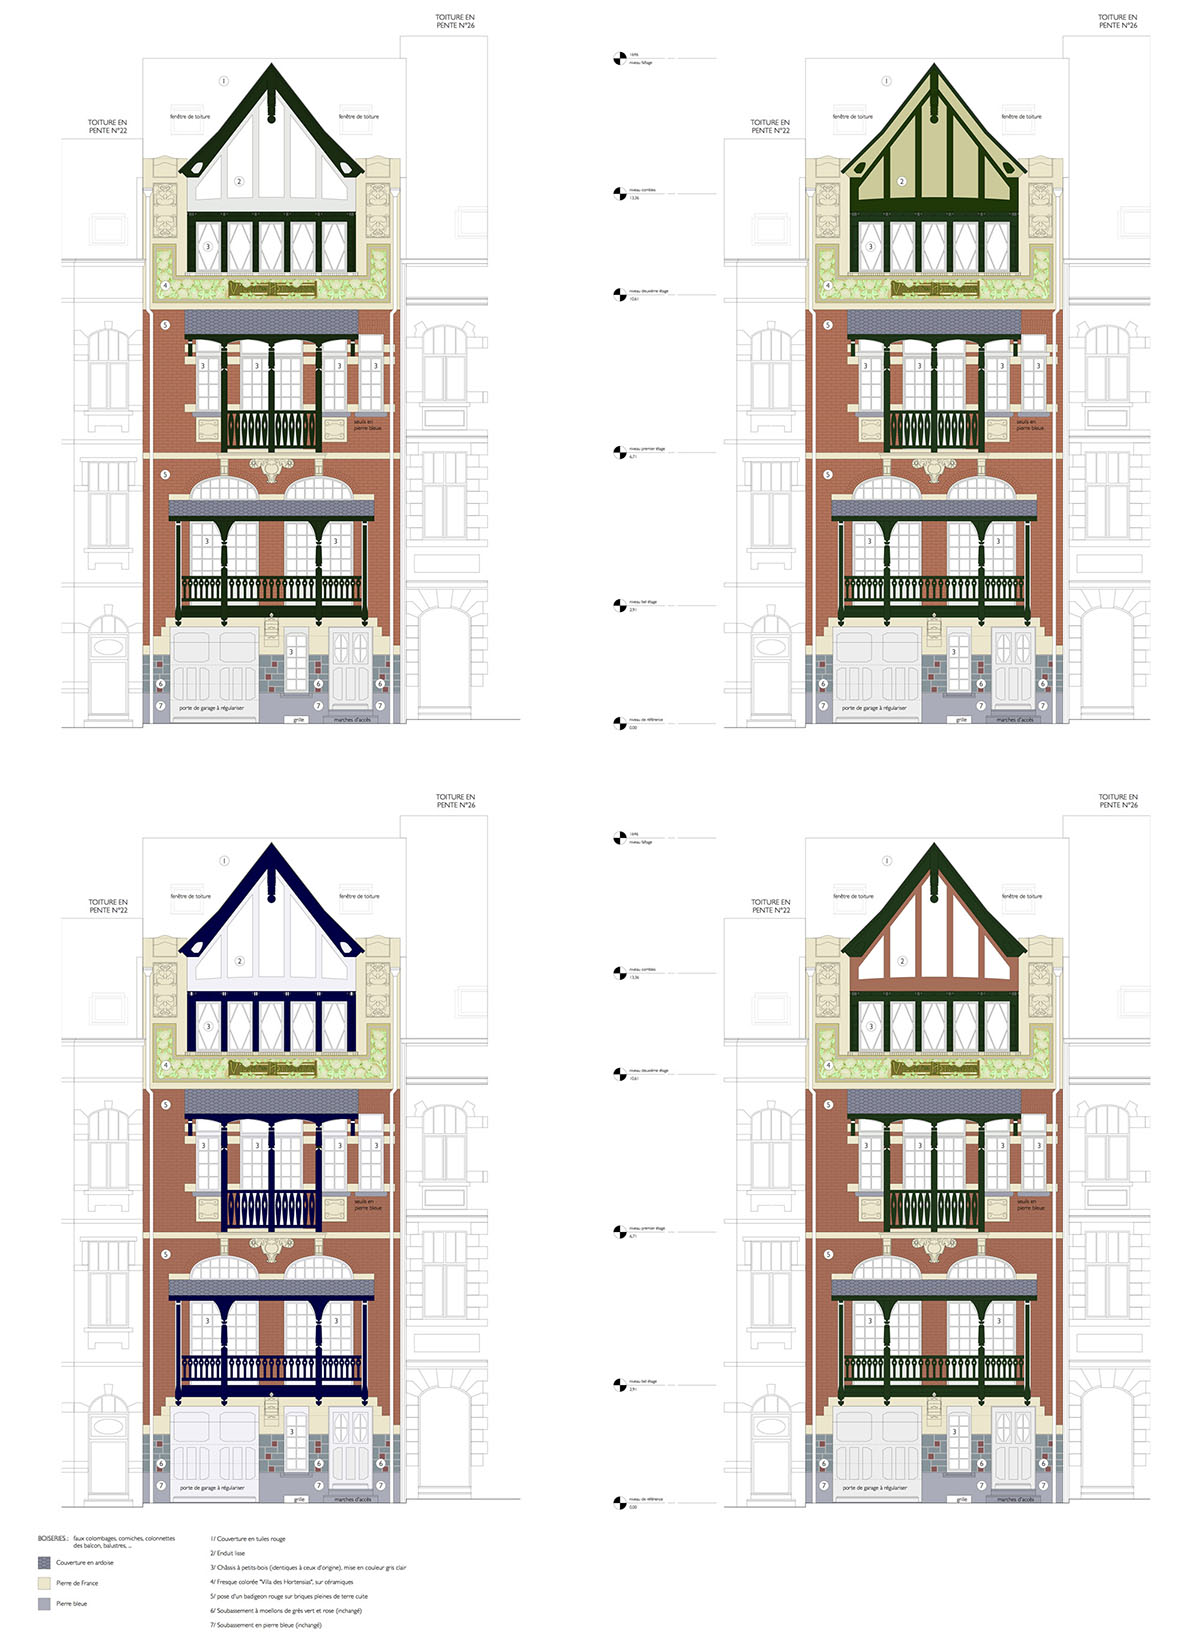 quatre élevations de la façade avec des variations colorimétriques sur les boiseries et le faux pignon